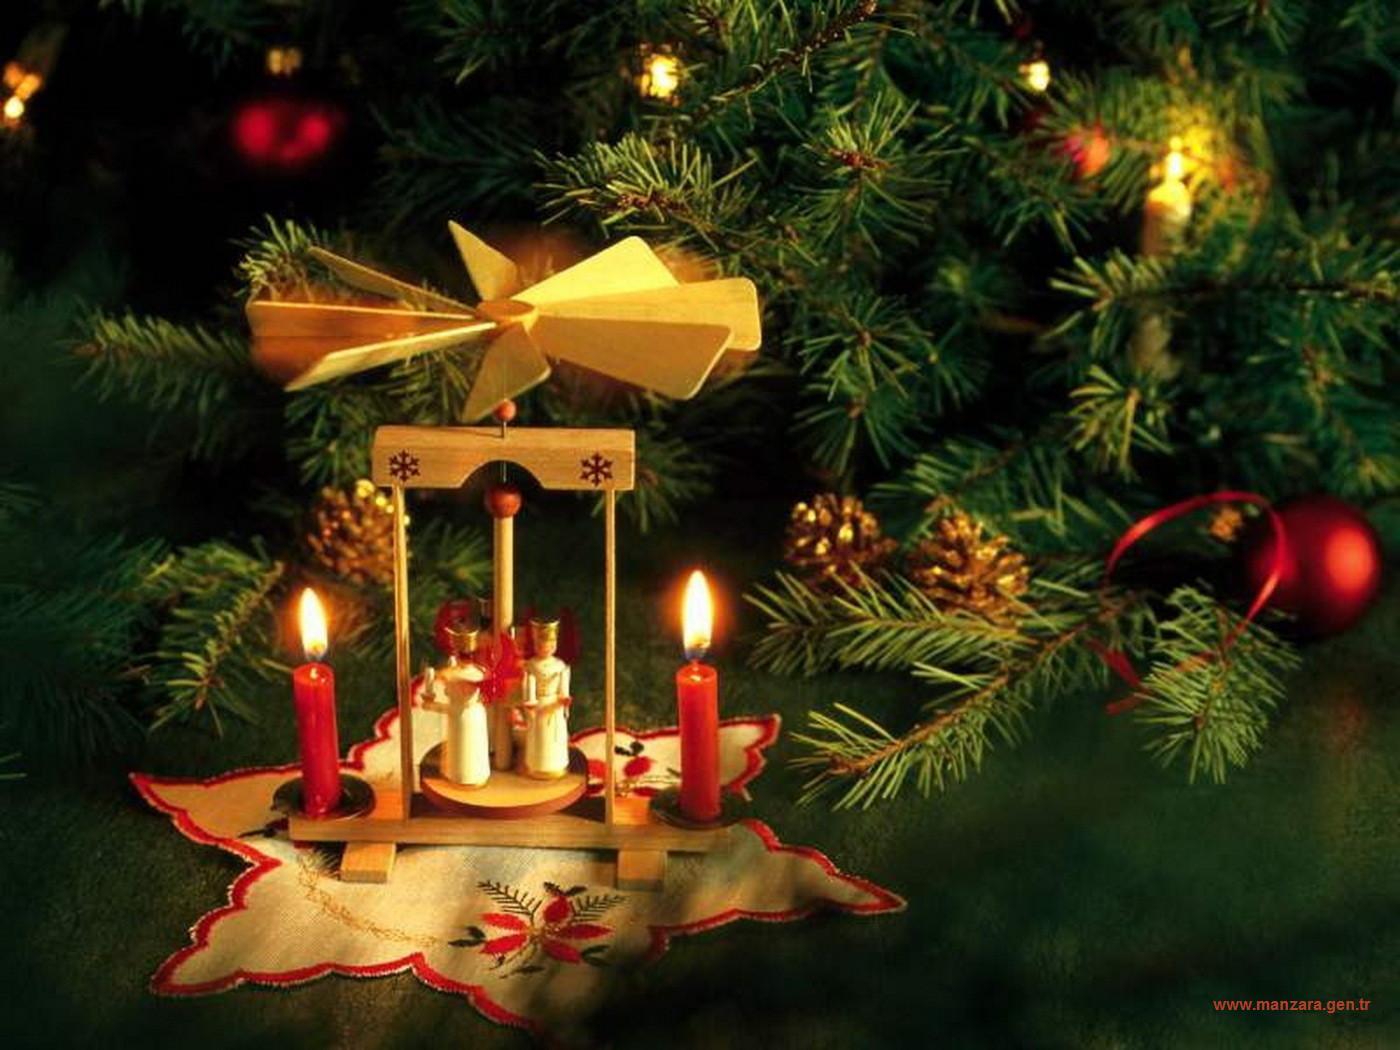 7 день нового года. Рождество. С Рождеством Христовым католическим. Открытки с Рождеством католическим. Новый год и Рождество Христово.